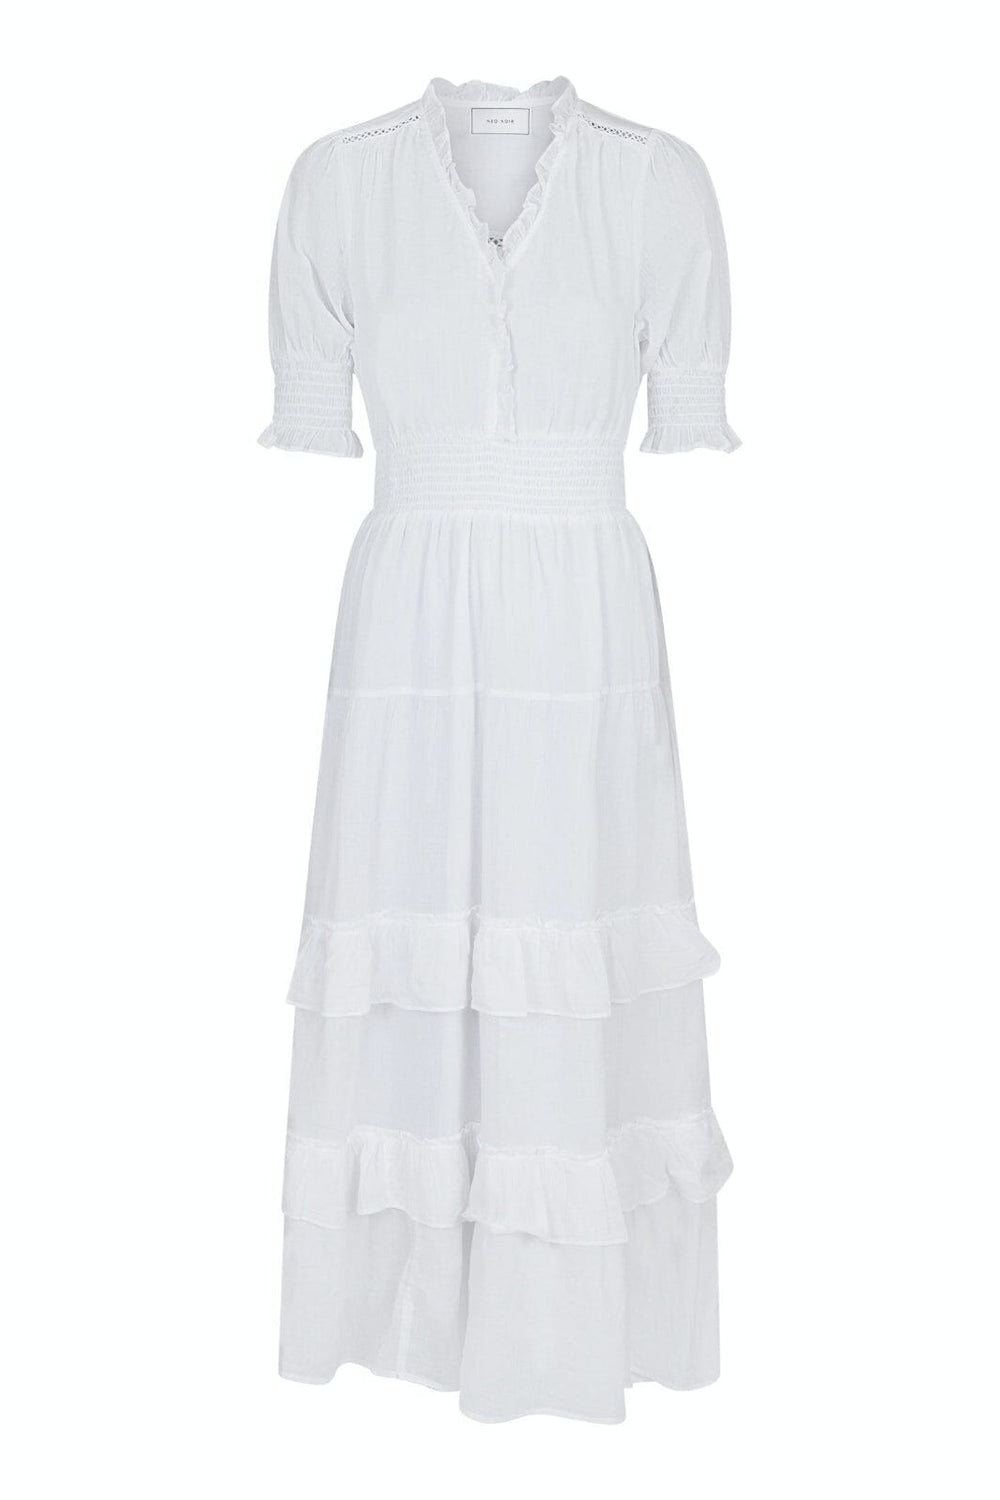 Neo Noir - Sophie S Voile Dress - White Kjoler 